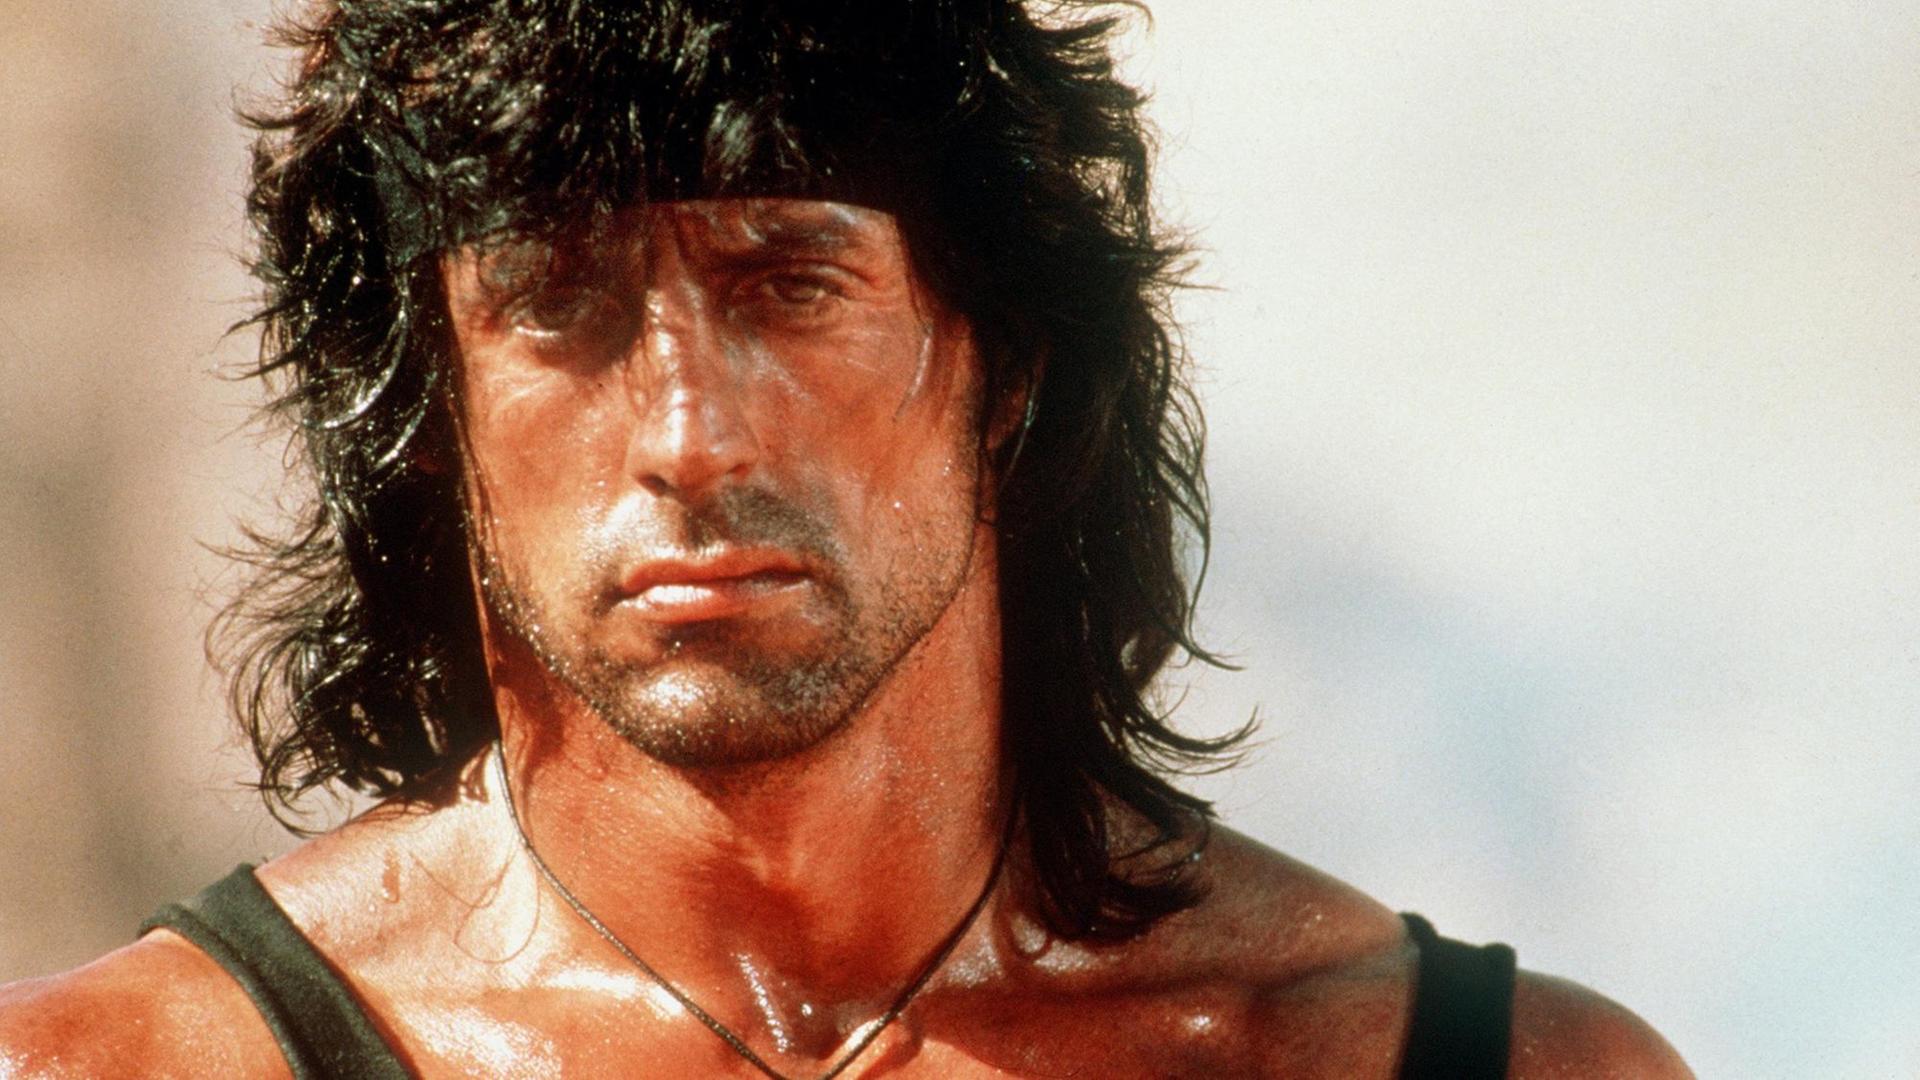 Der US-amerikanische Schauspieler Sylvester Stallone als knallharter Kämpfer in "Rambo III".